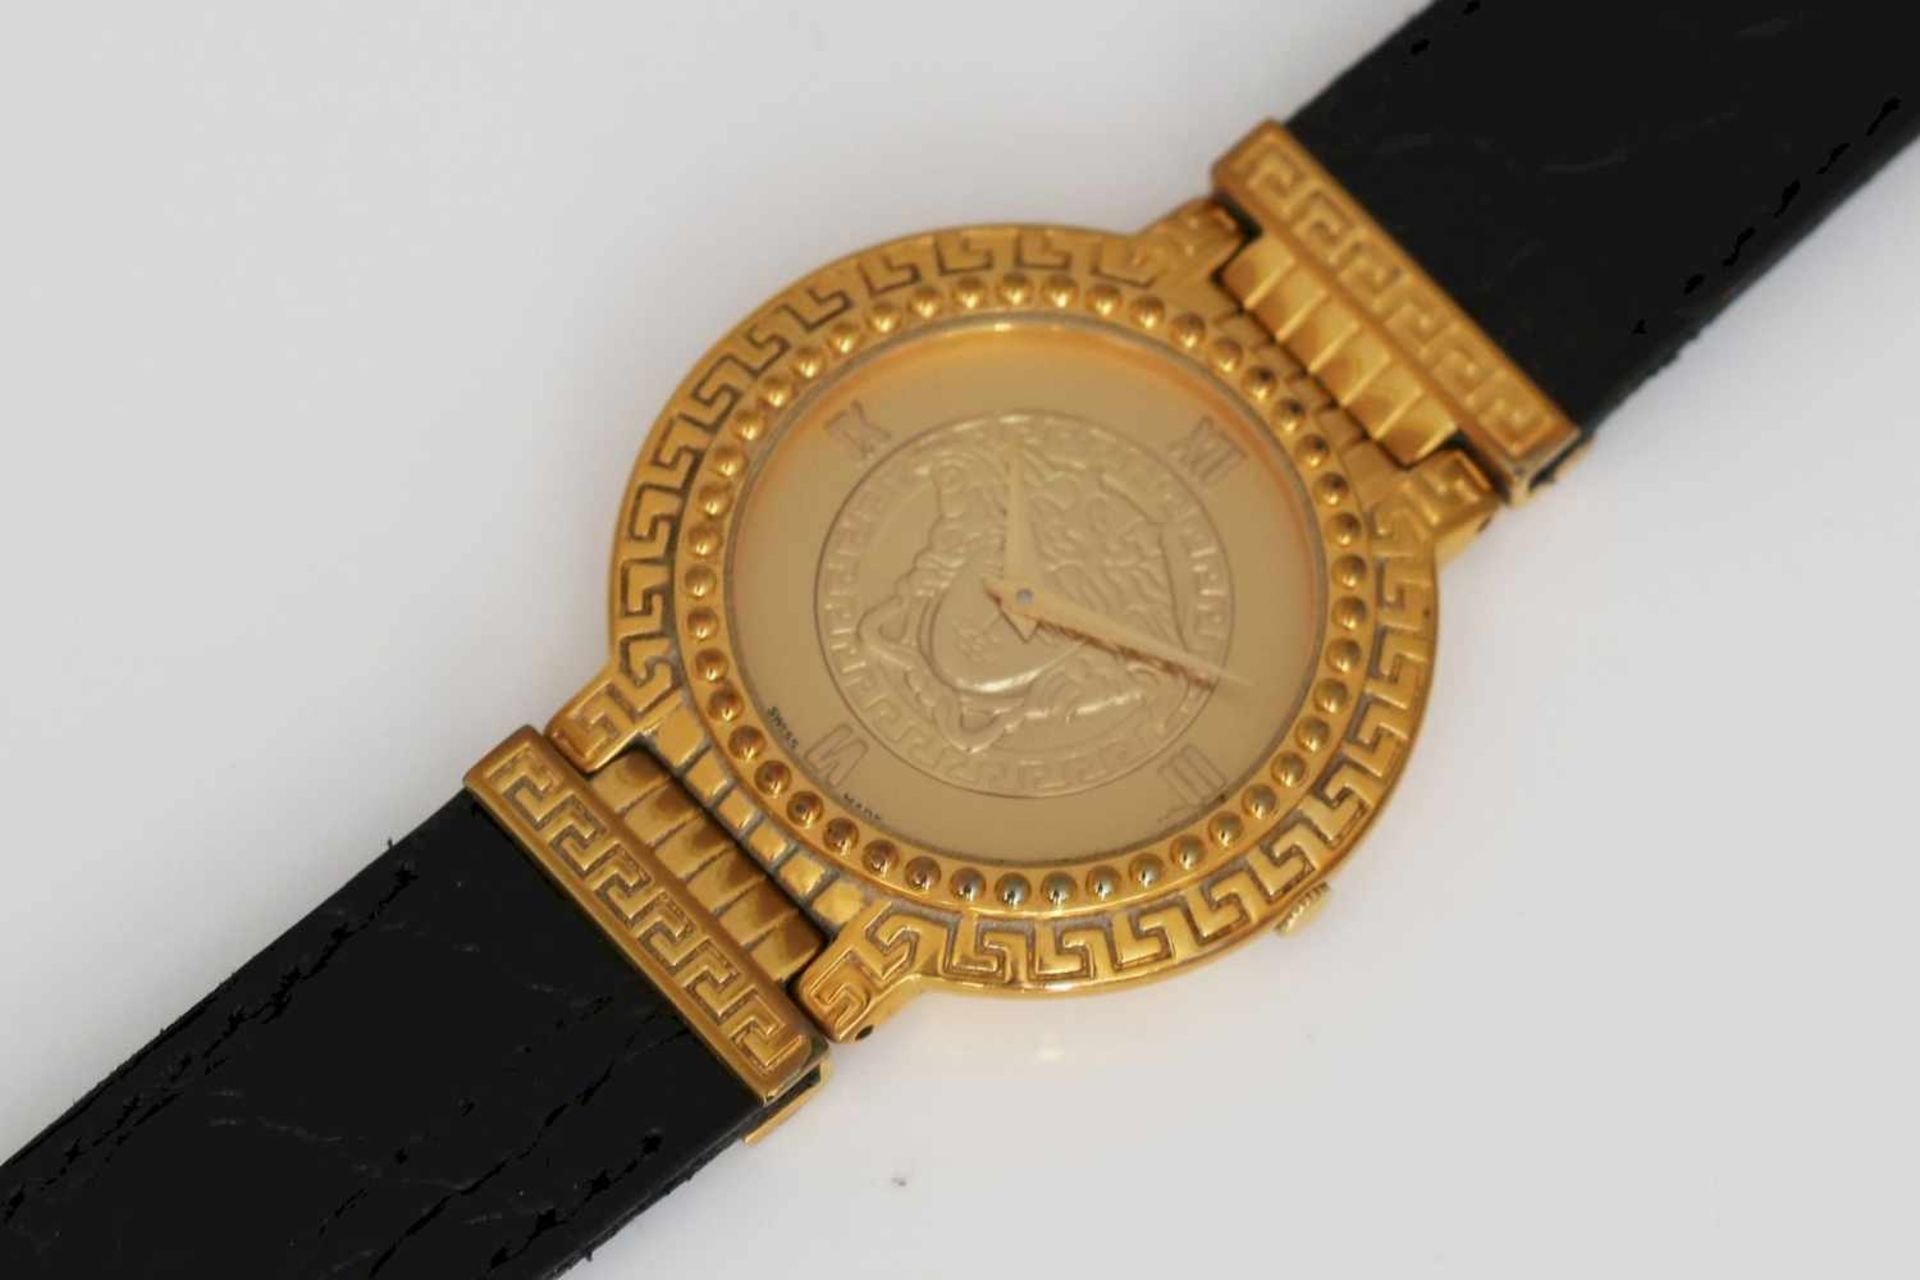 Gianni Versace Armbanduhr ¨Medusa¨rundes, vergoldetes Gehäuse, Lünette mit Perlband und reliefiertem